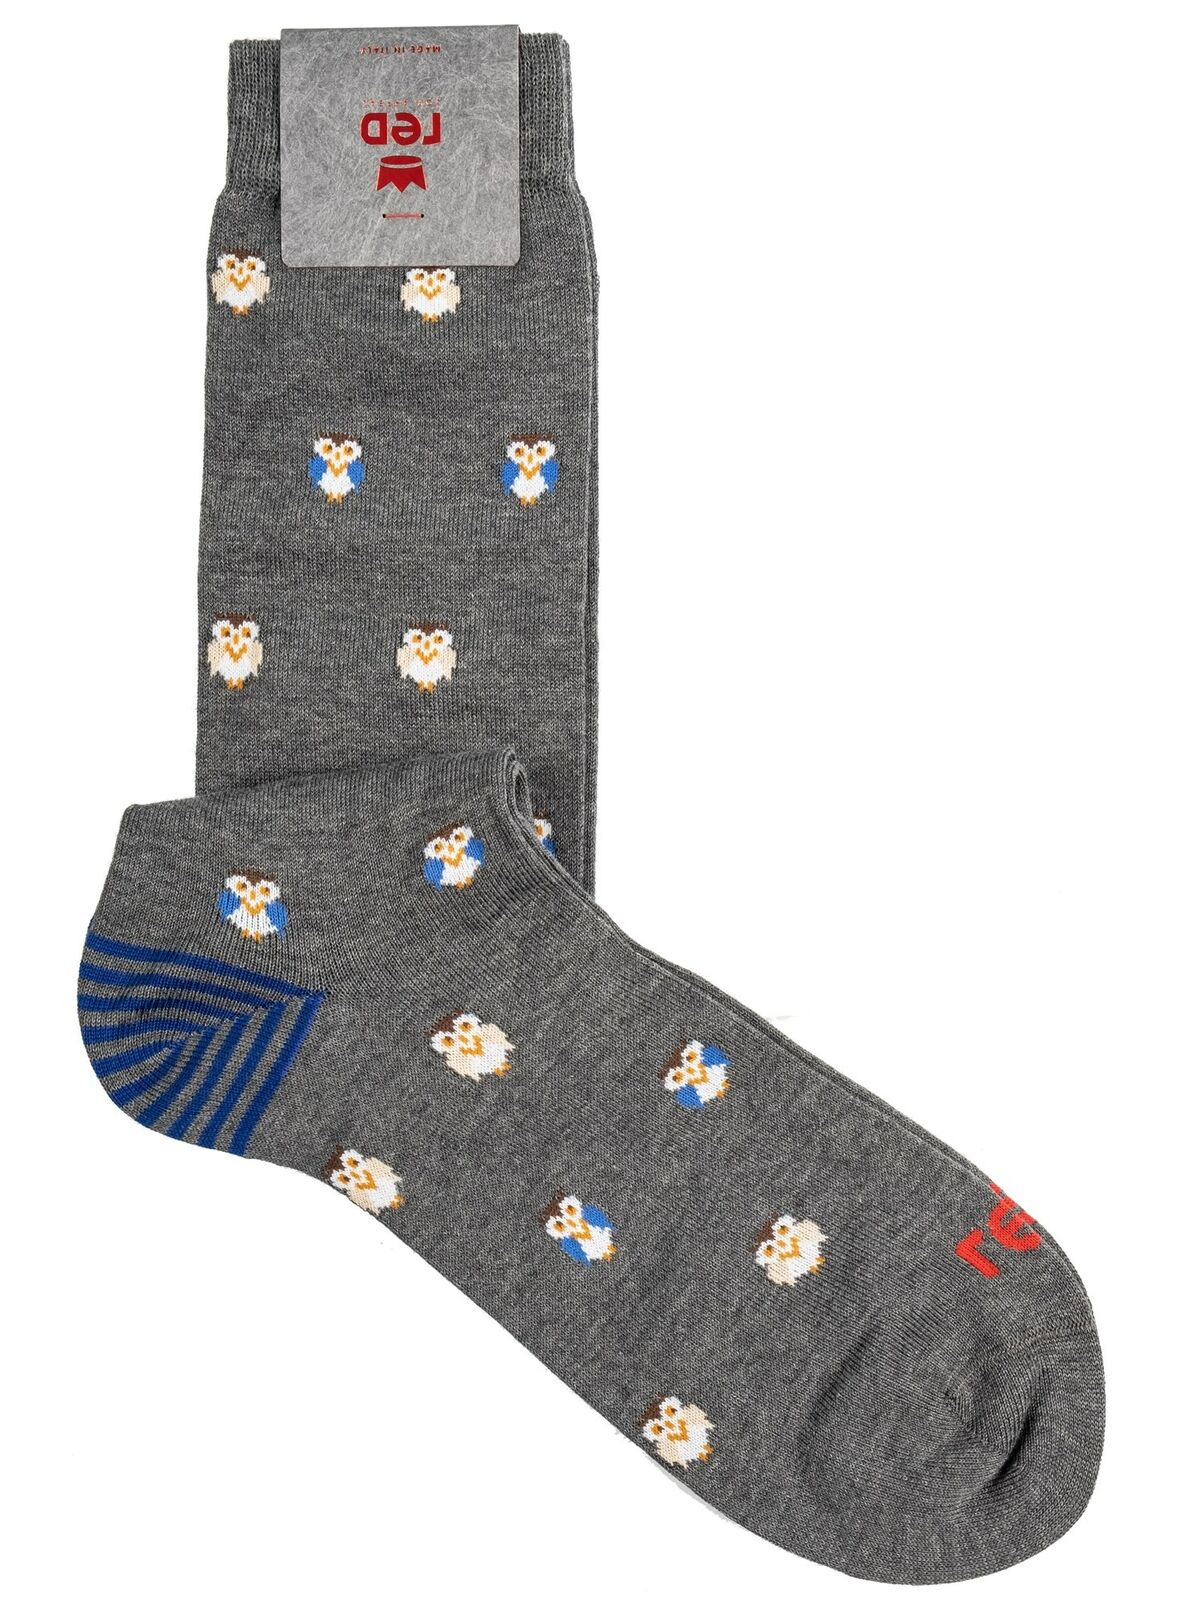 Red Sox Appeal 64800G-V0129 Men's Long Socks Owl Pattern Gray cotton